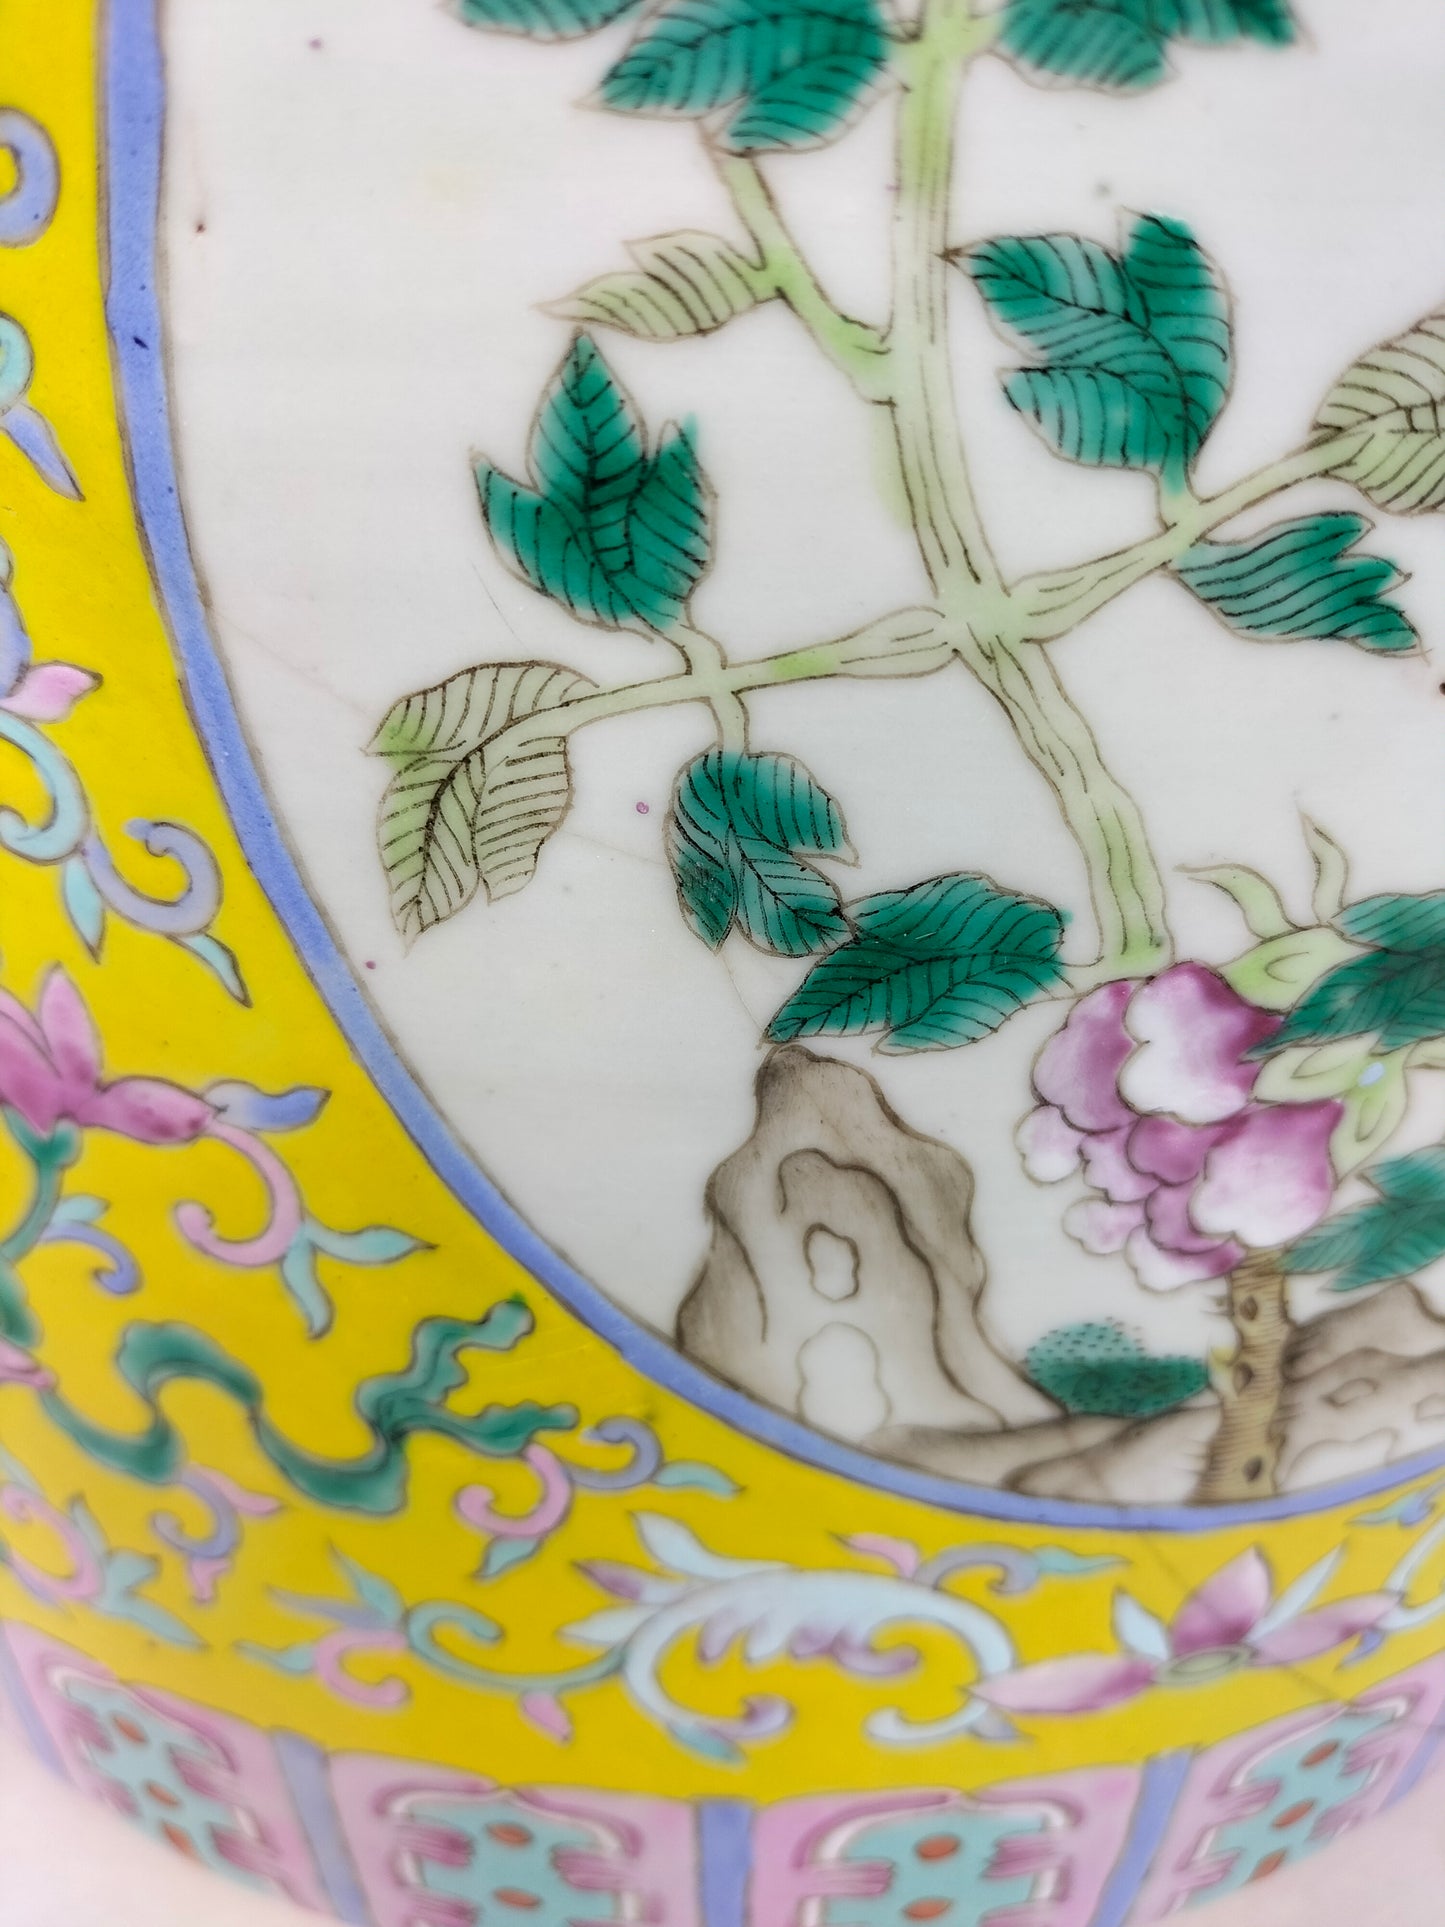 إناء زهور كبير عتيق الطراز مزين بالورود // أسرة تشينغ - القرن التاسع عشر